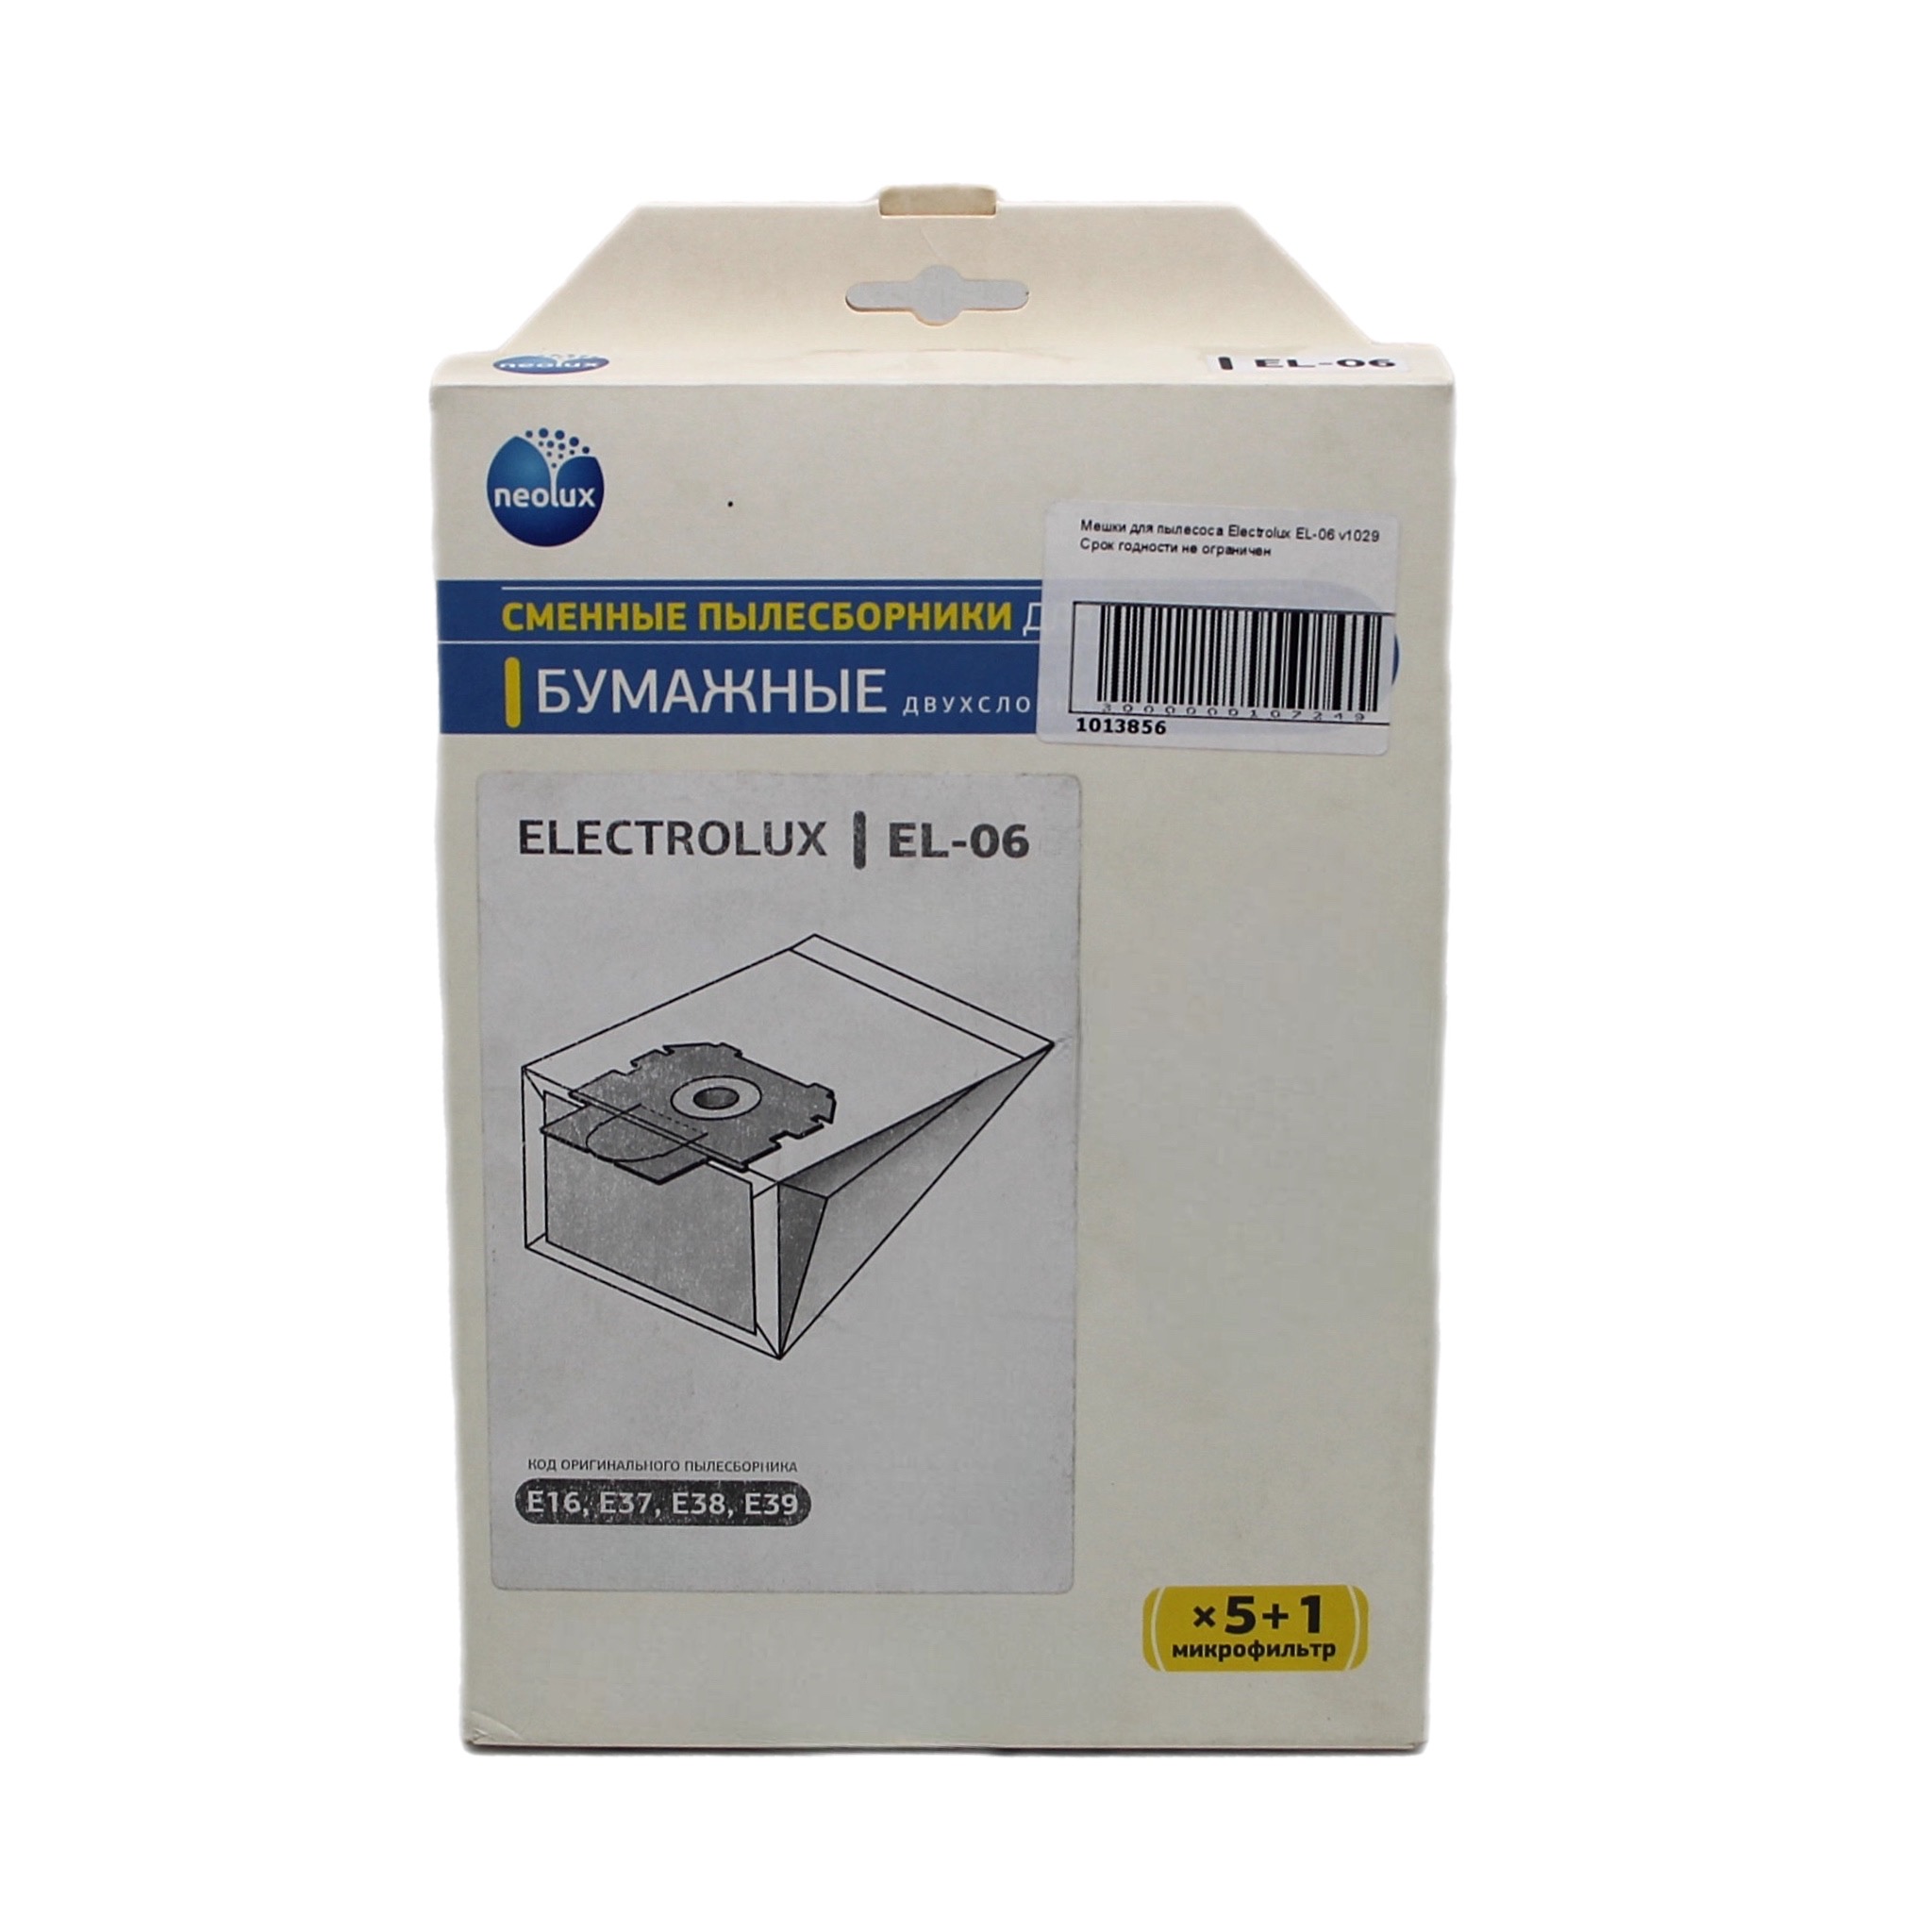 Мешок для бытового пылесоса OEM EL-06 пылесборники бумажные topperr sm 9 5шт 1 микрофильтр